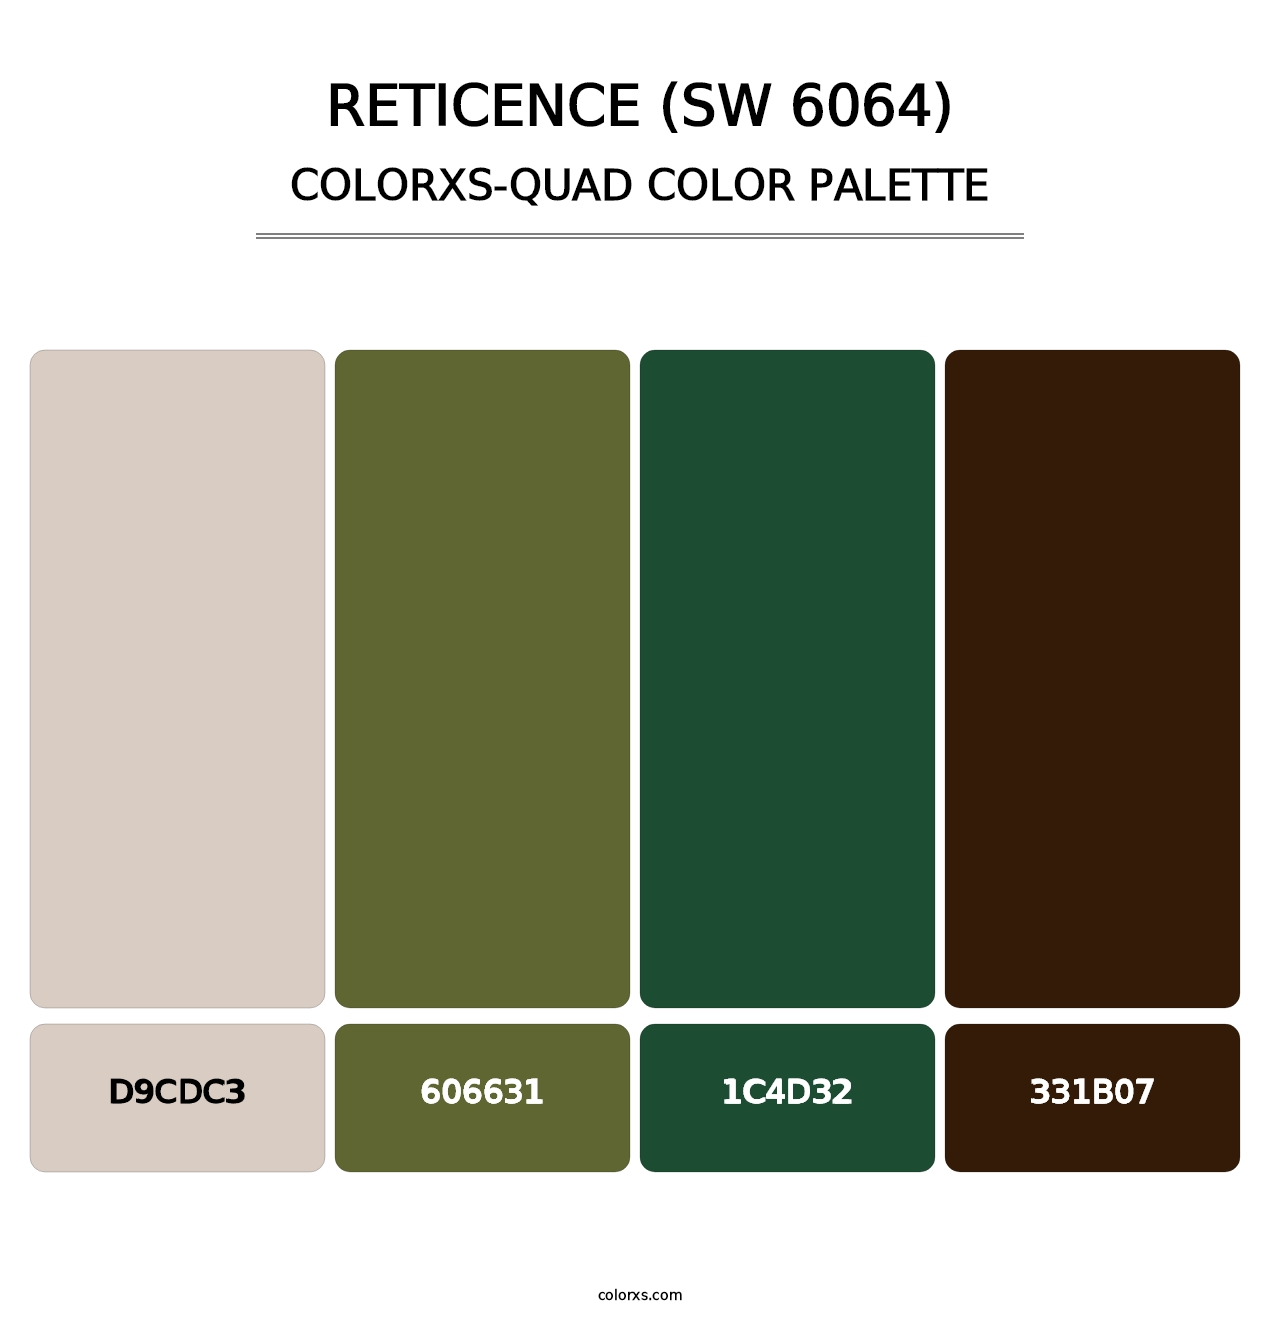 Reticence (SW 6064) - Colorxs Quad Palette